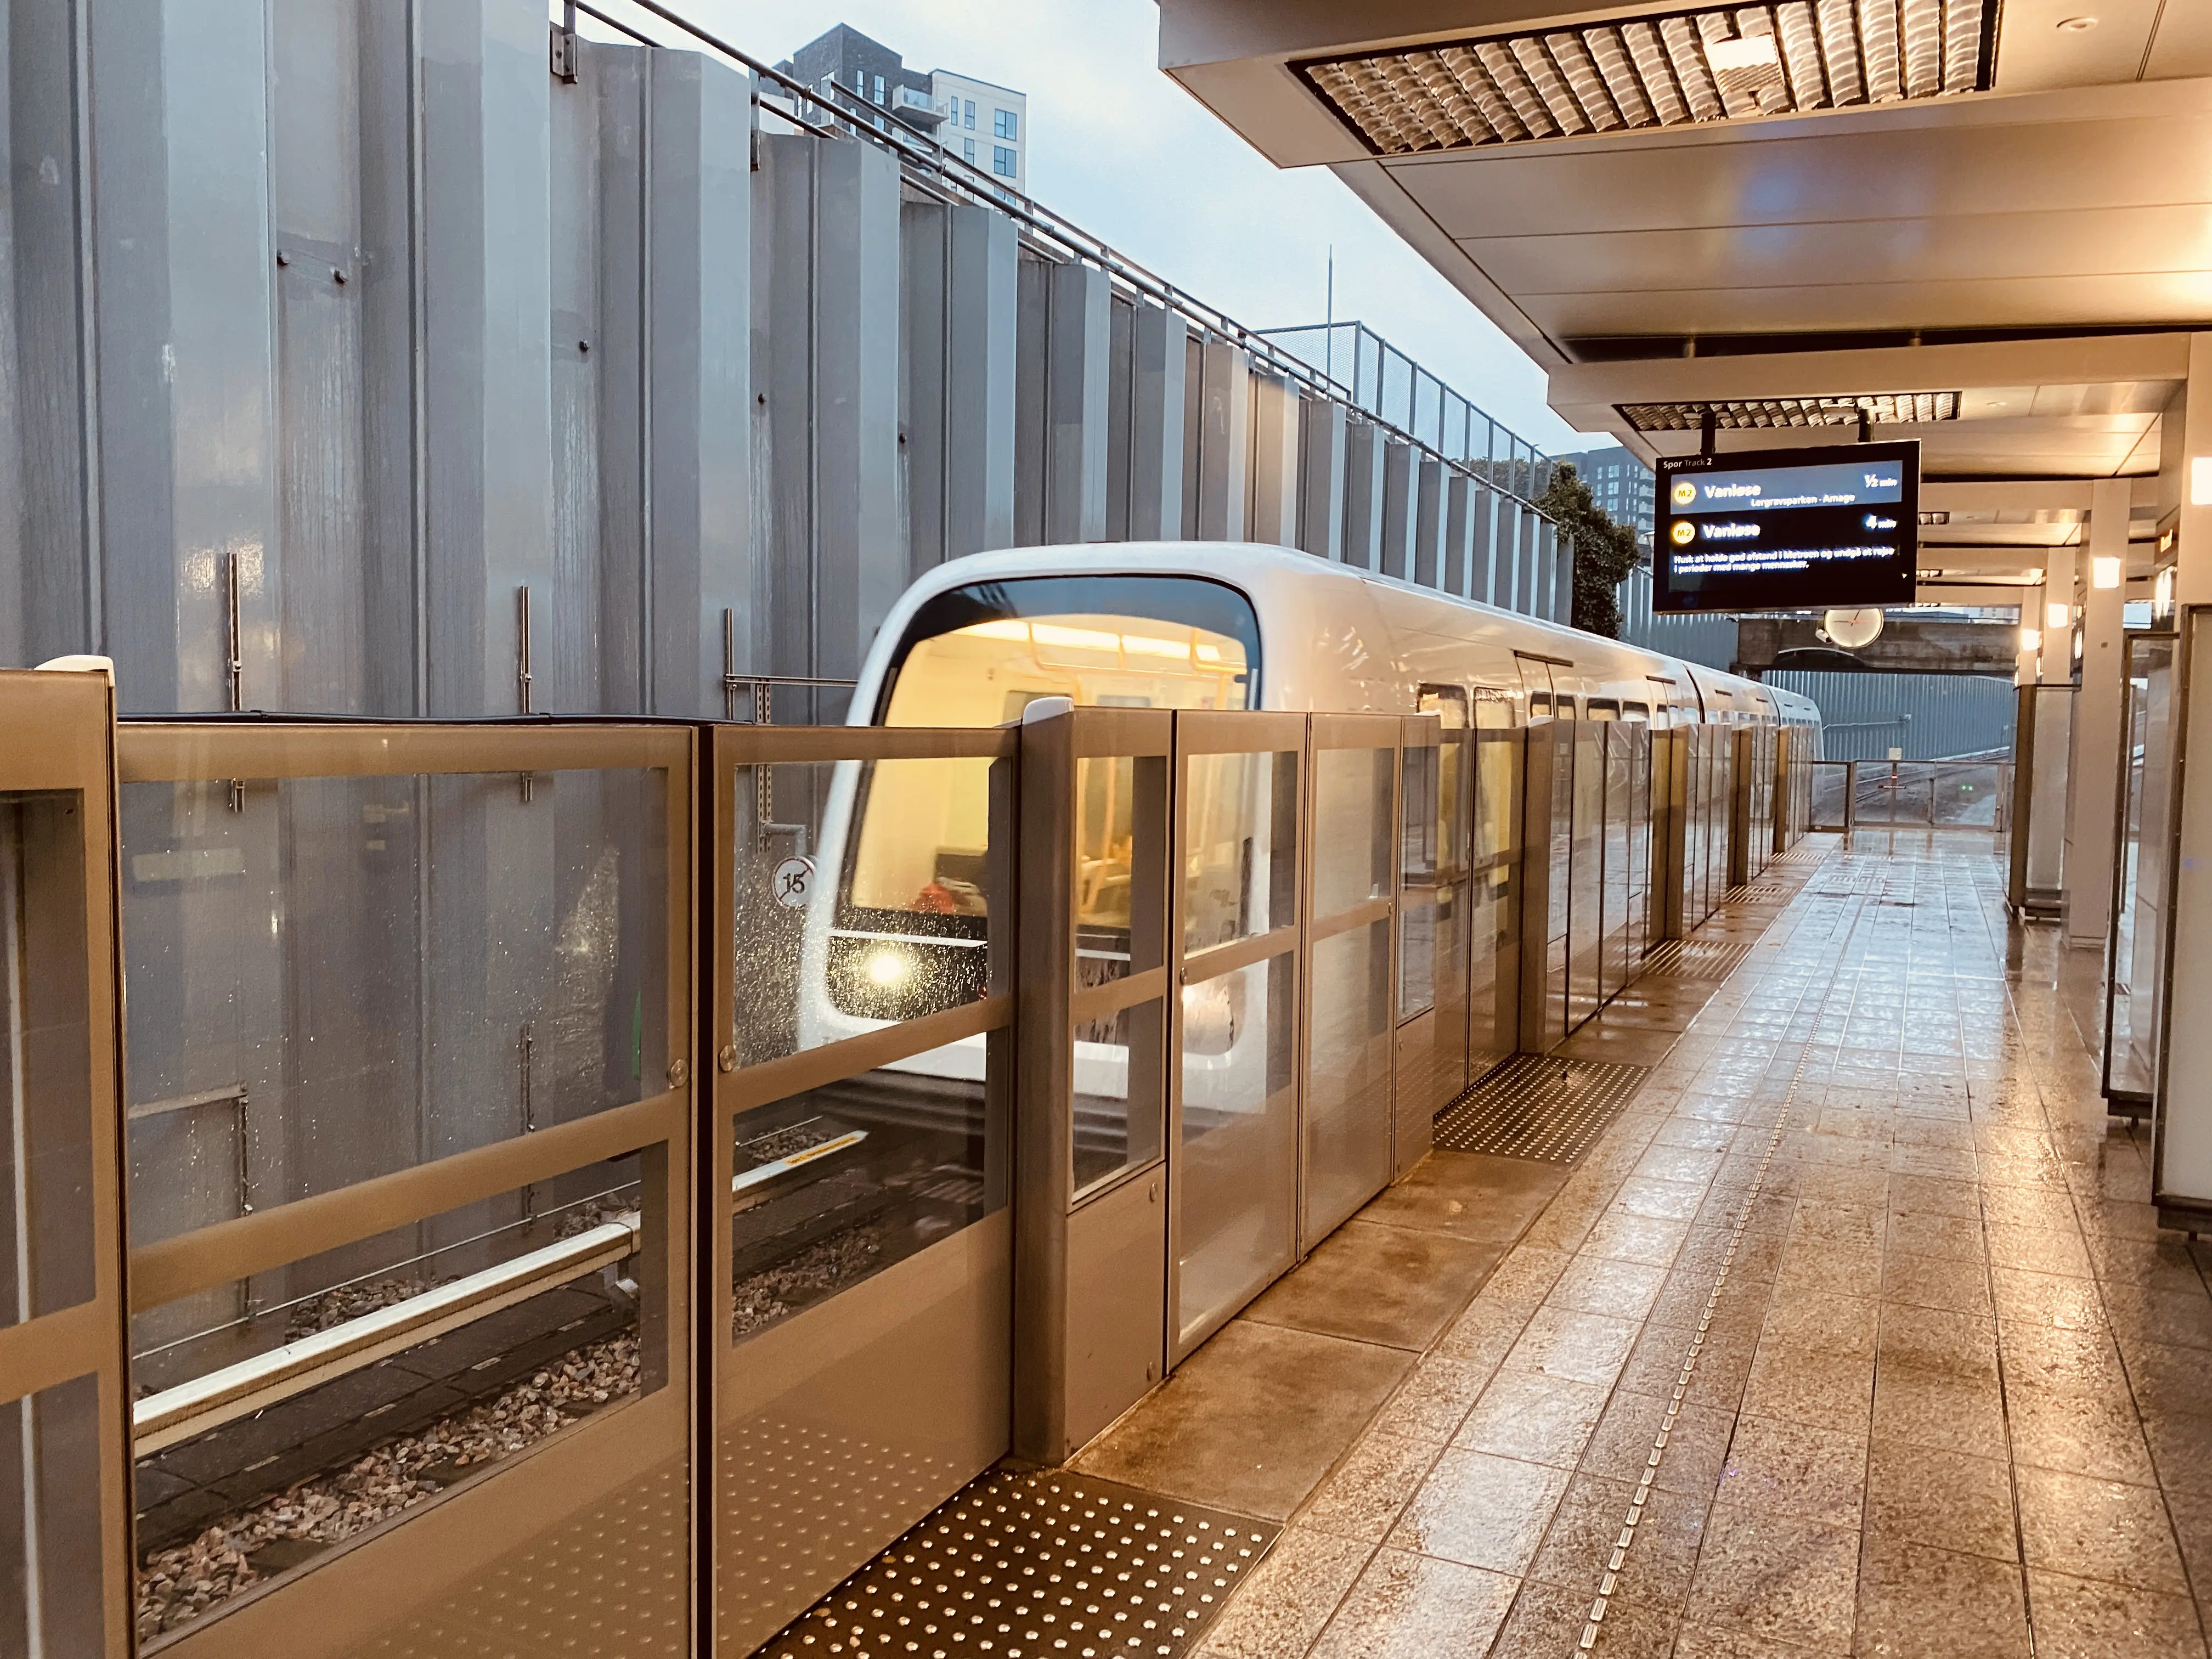 Billede af Øresund Metrostation.